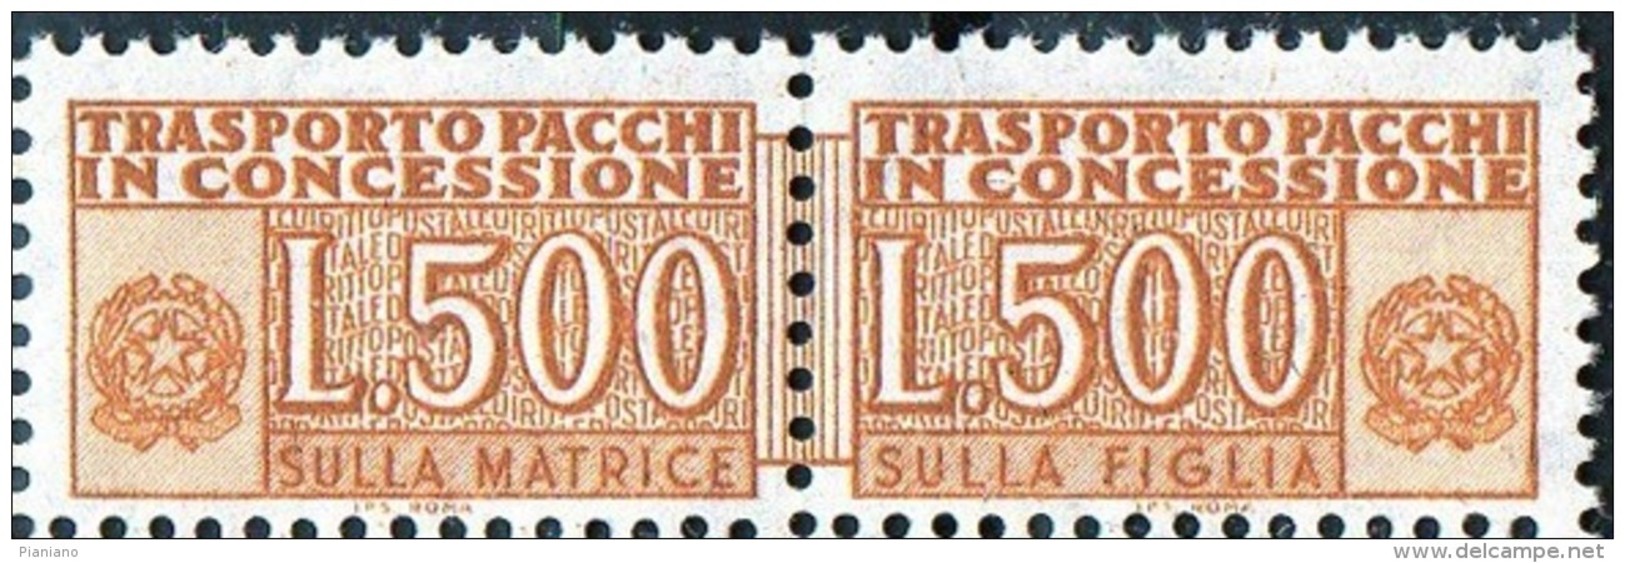 PIA - ITA - Specializzazione : 1977 :  Pacchi In Concessione £ 500   - (SAS 19/II  - CAR 37) - Paquetes En Consigna